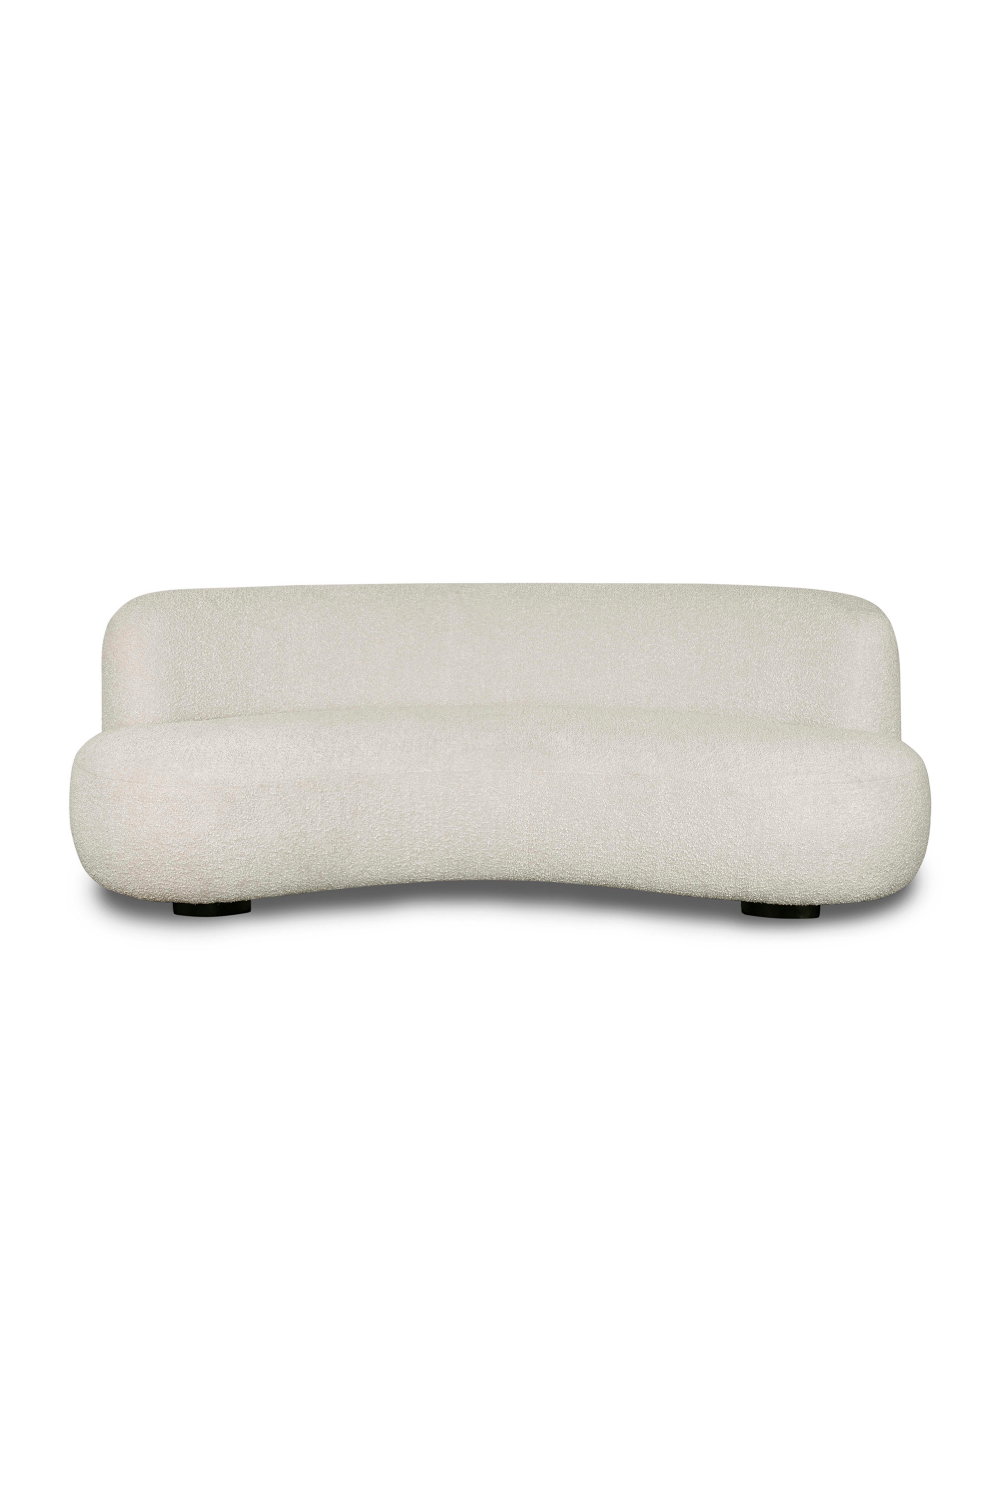 Contemporary Curved Sofa | Liang & Eimil Polter | OROA.com